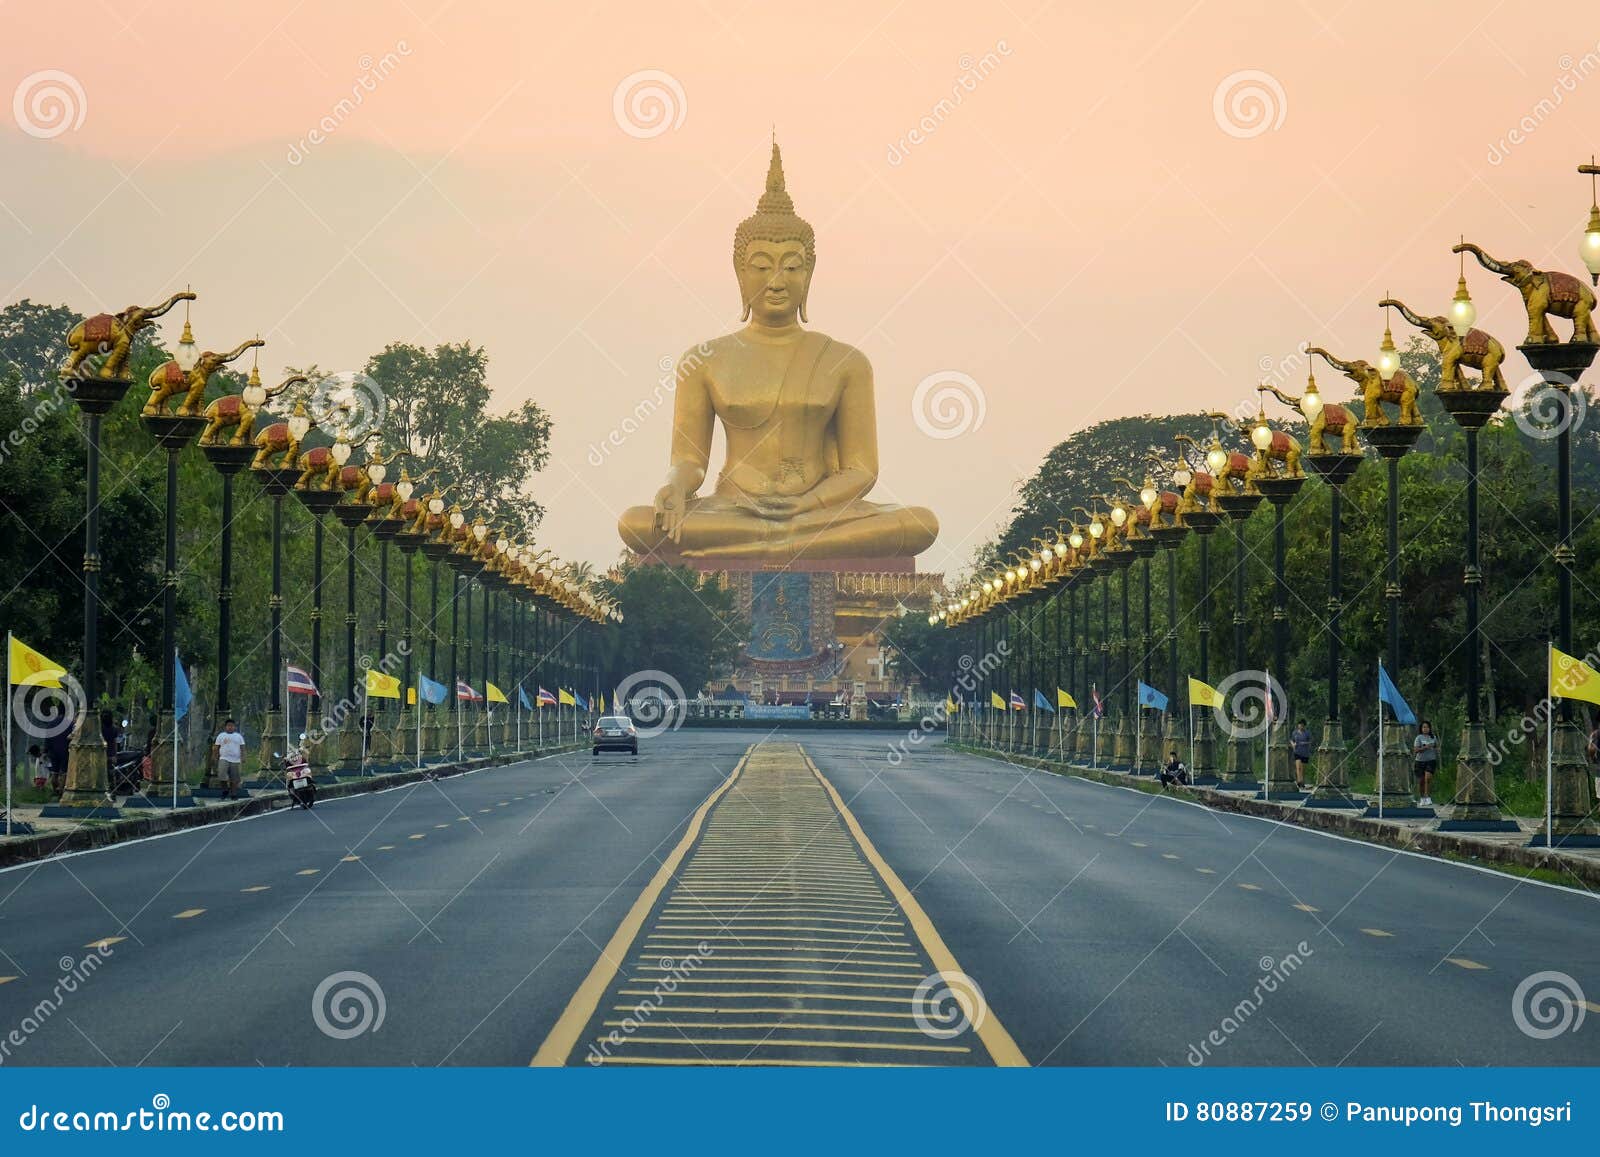 big-buddha-singburi-thailand-80887259.jp